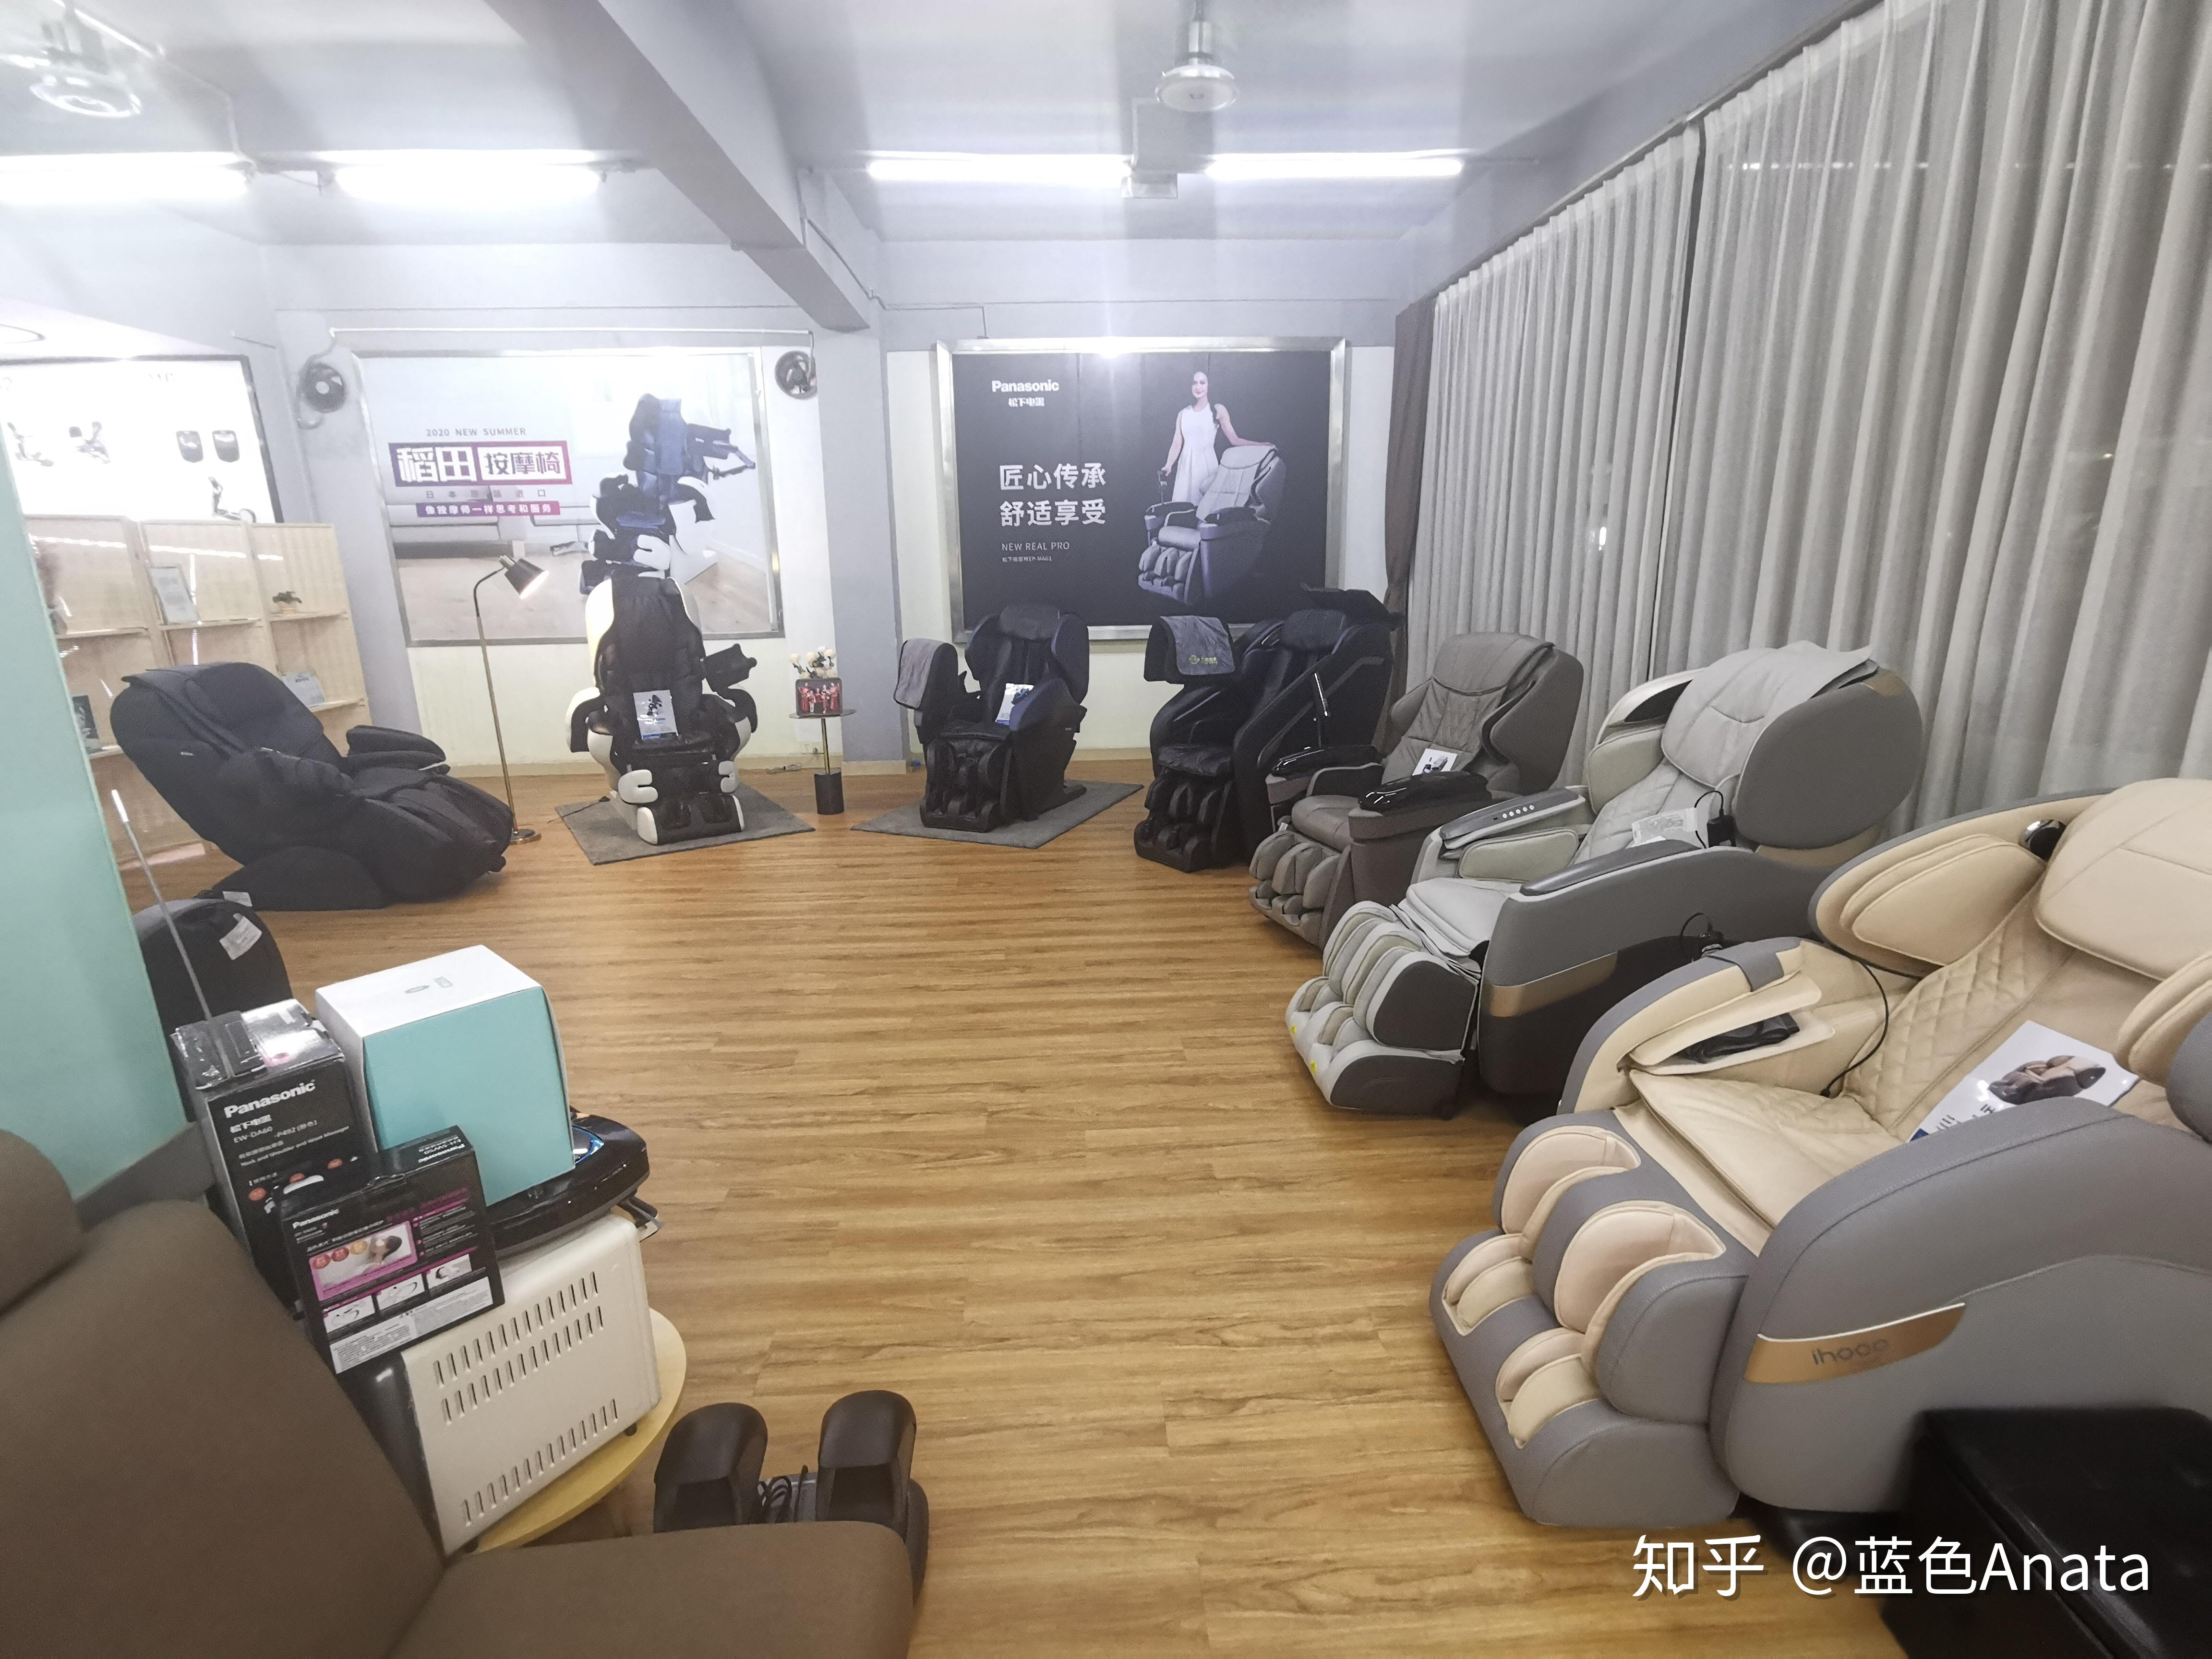 这是我在深圳一家按摩椅专卖店买按摩椅的经历